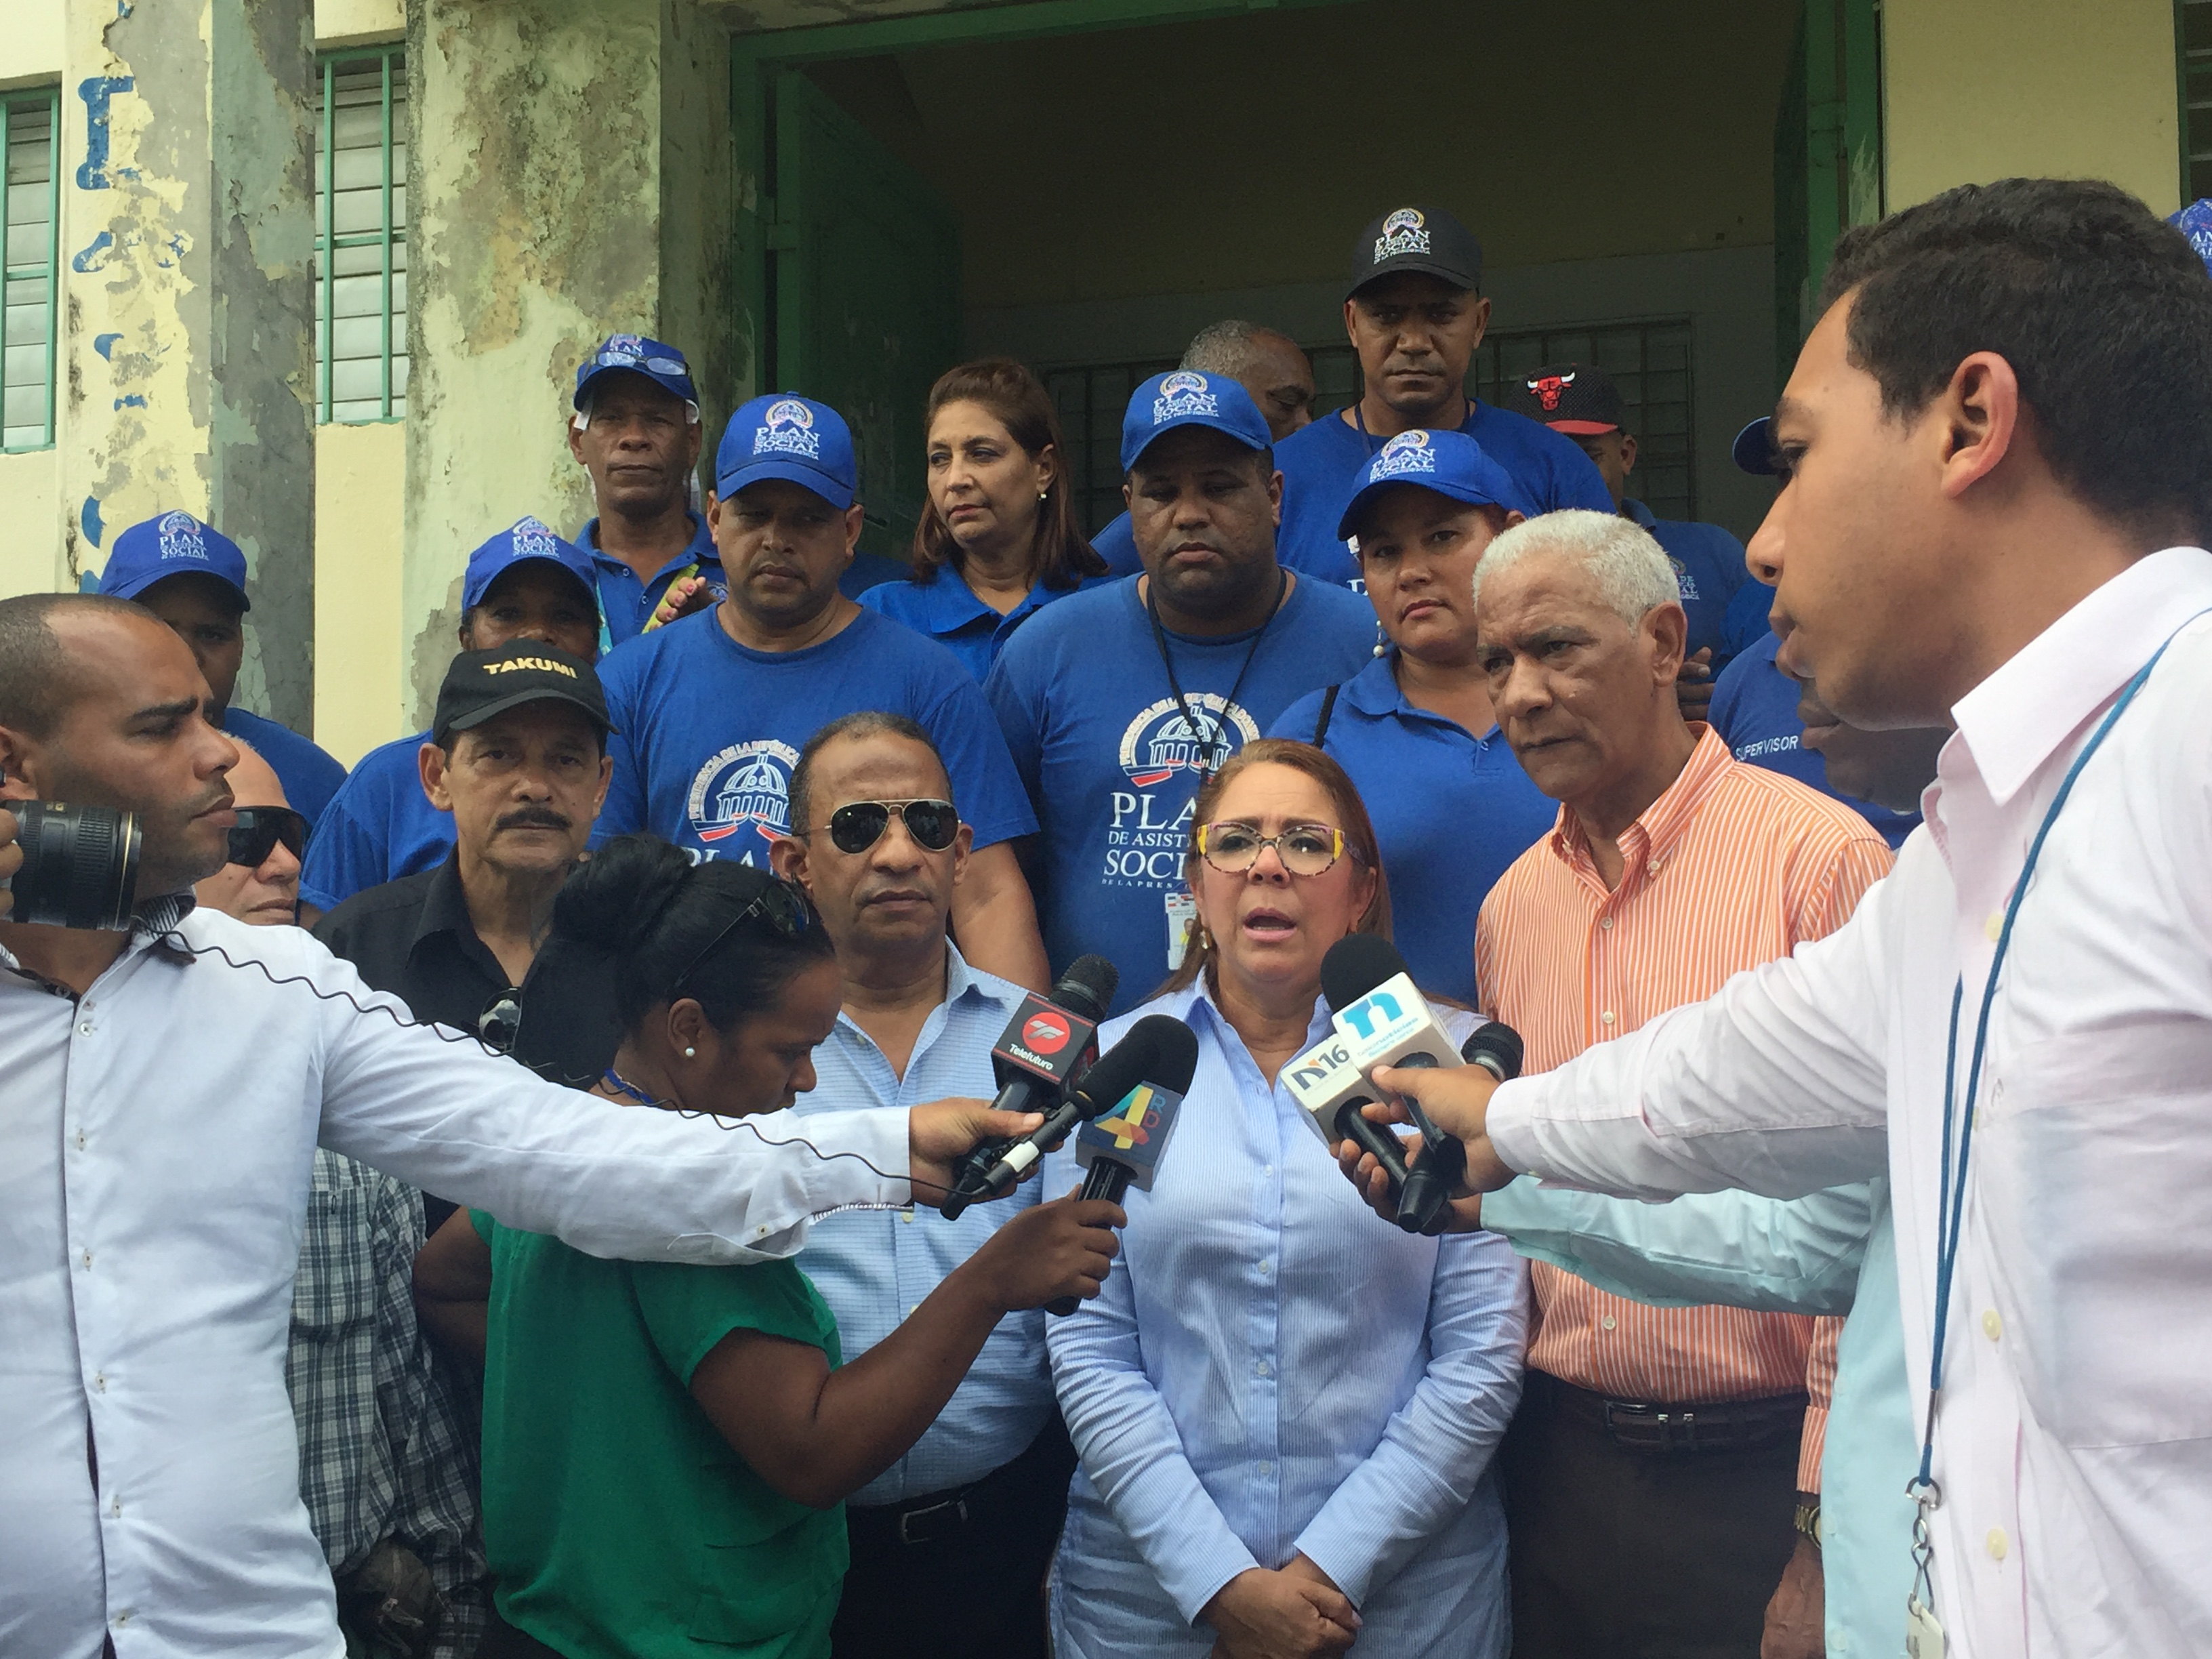  Plan Social inicia operativo que beneficiará 10 mil familias en el Gran Santo Domingo